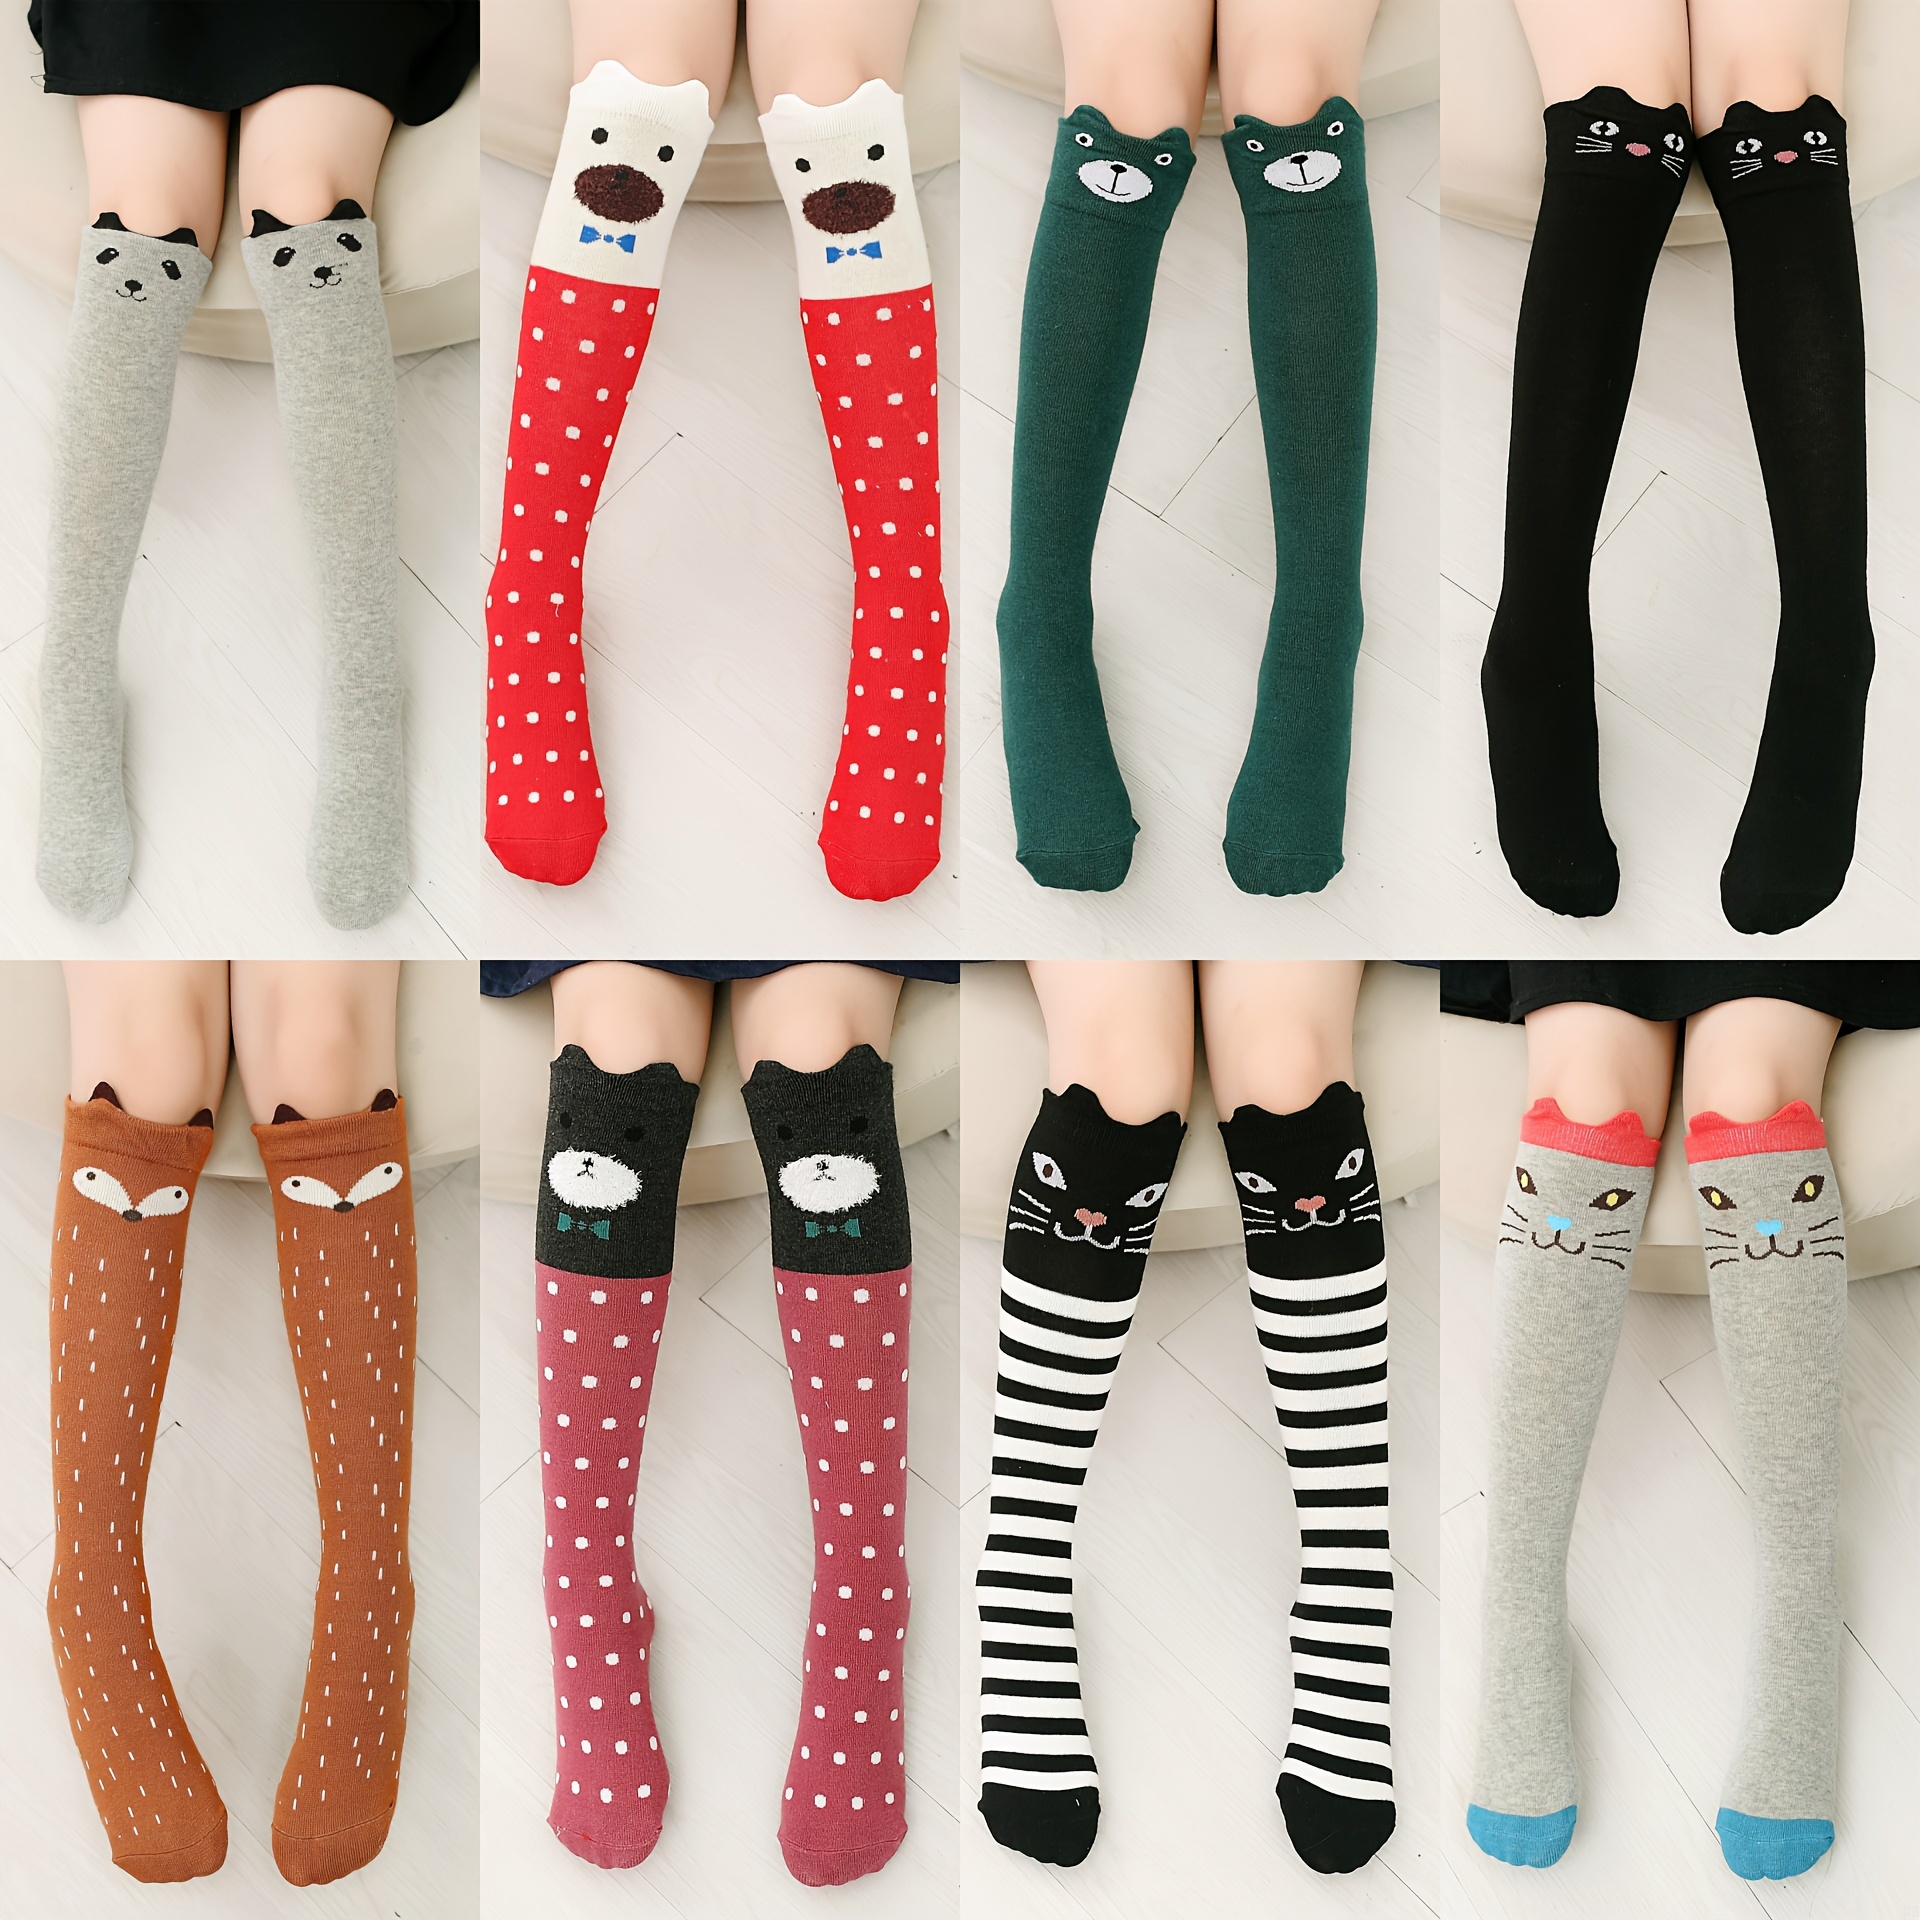 Cute Star Print Leg Warmers, JK Style Knit Knee High Leg Warmer Socks,  Women's Stockings & Hosiery